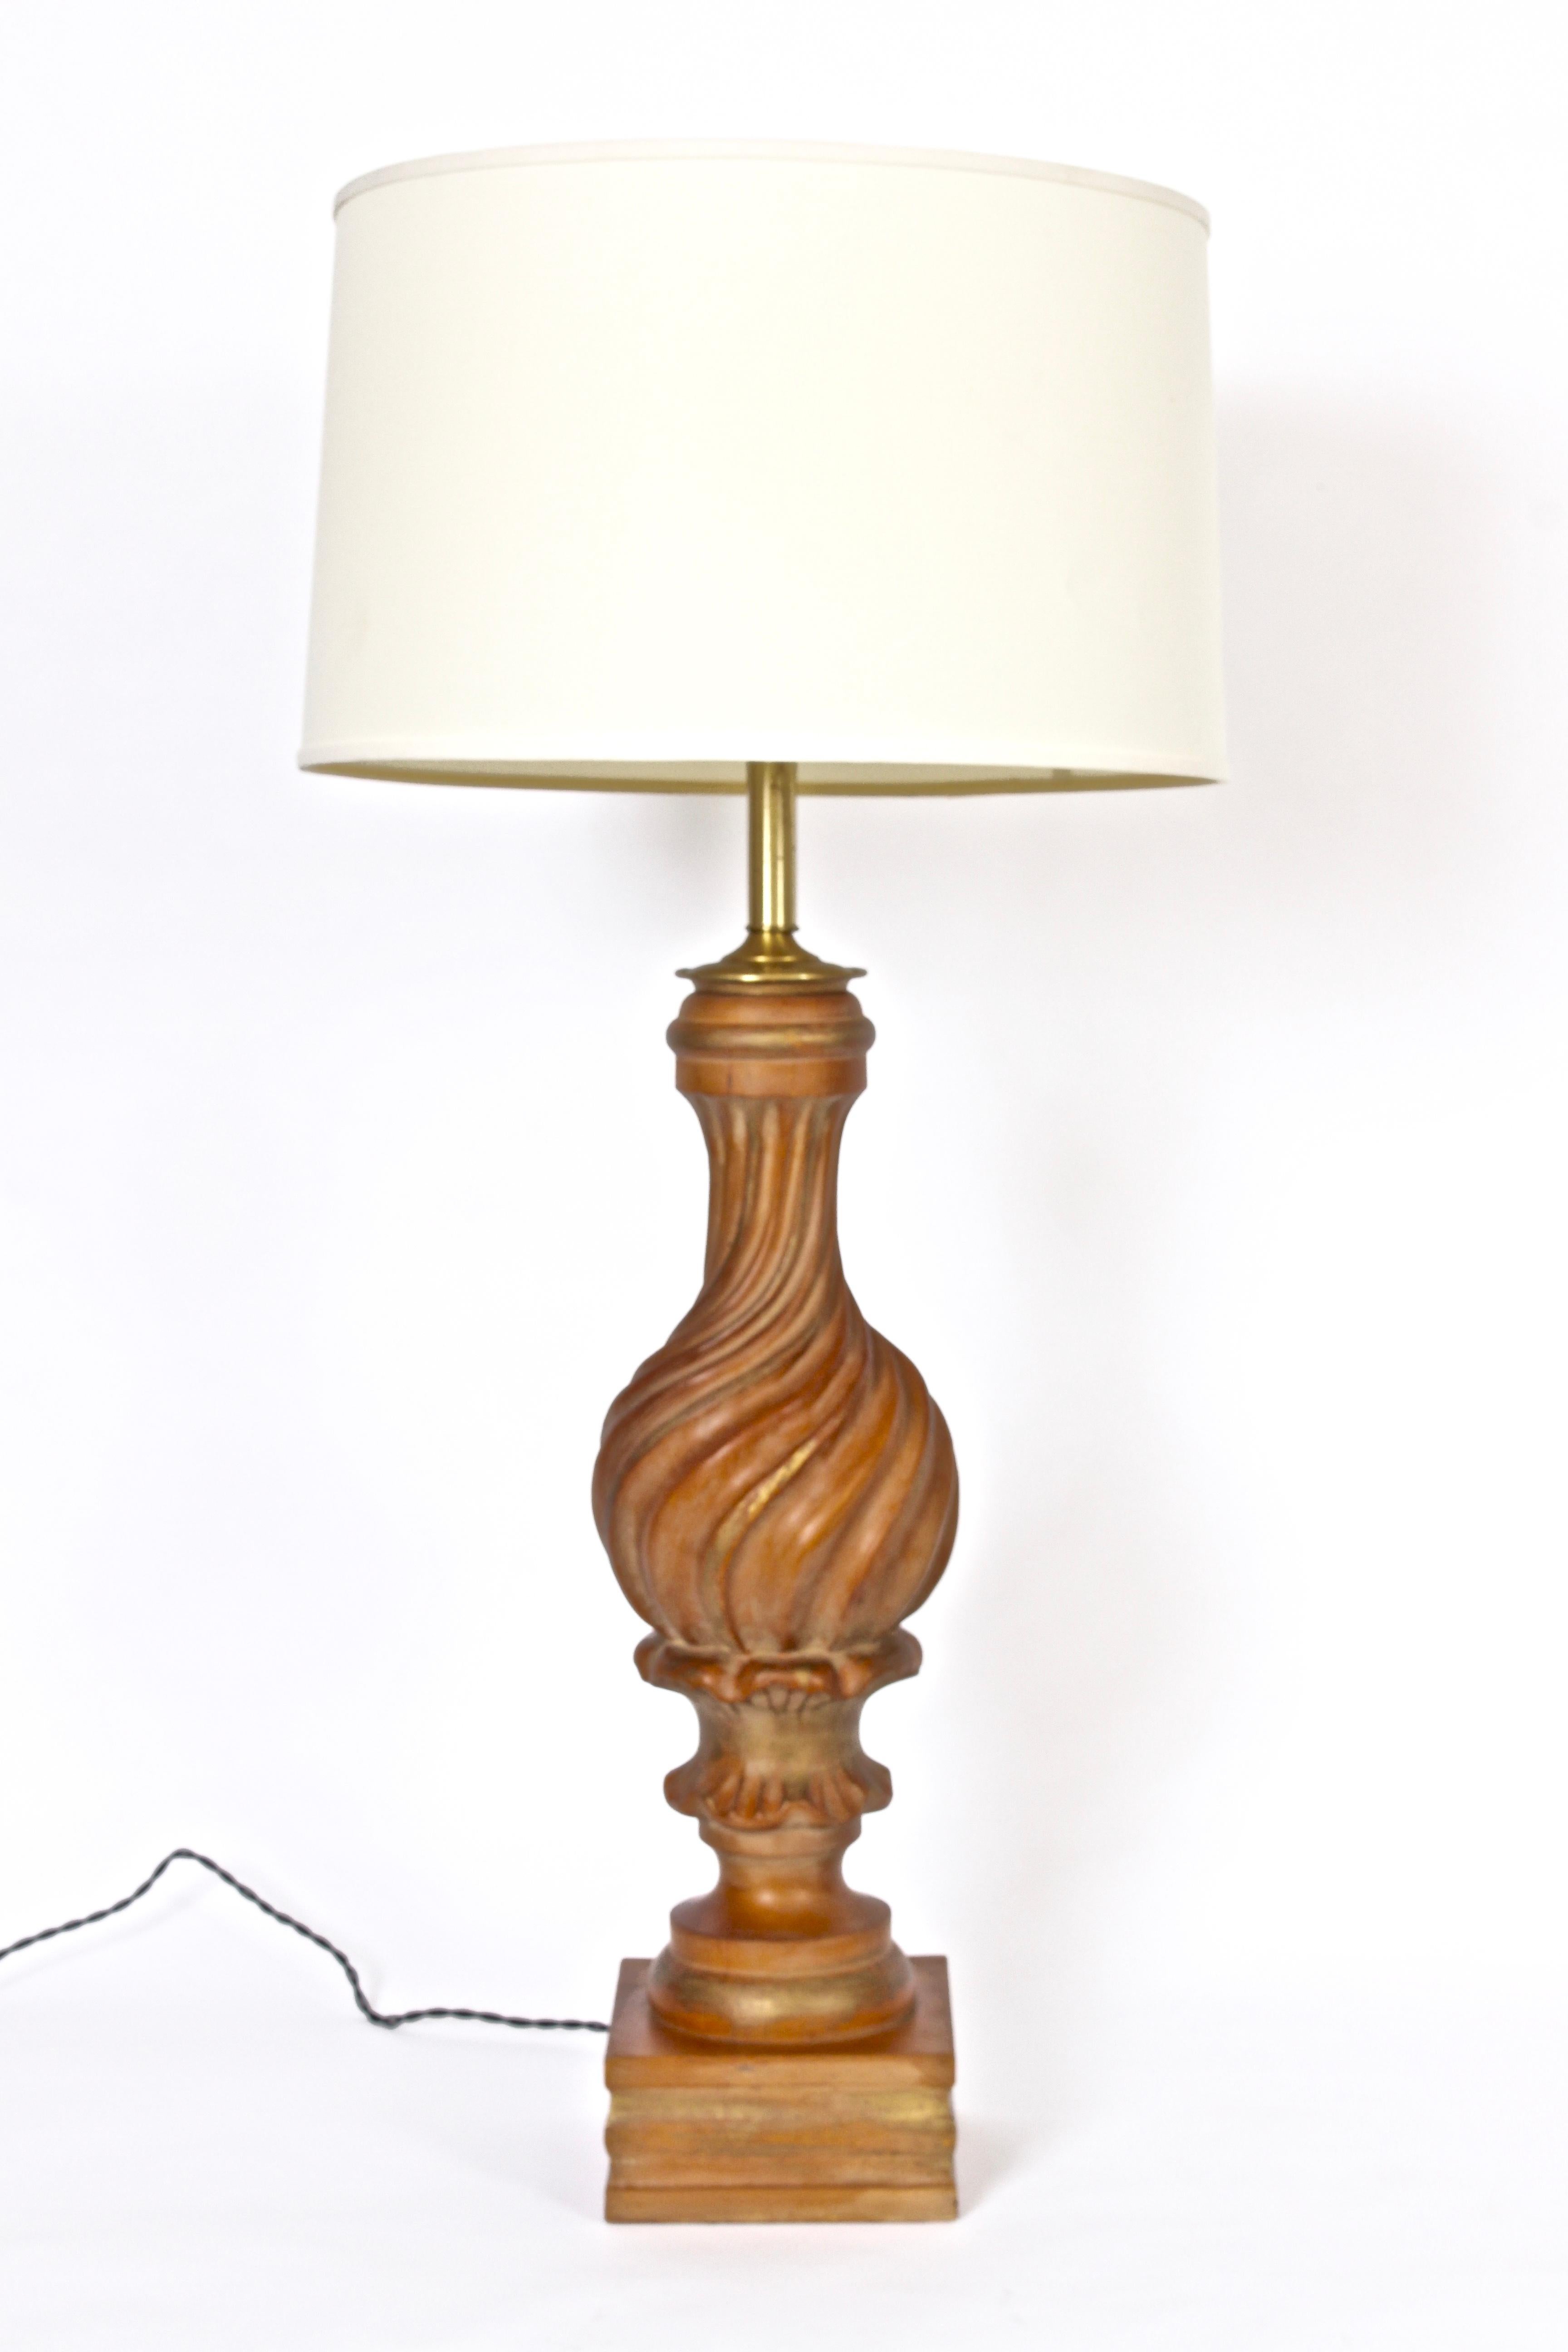 Beachtliche italienische, handgeschnitzte Tischlampe aus Giltwood von Marbro Lamp Company, um 1960.  Der handgefertigte, gewirbelte Holzkörper ist leicht goldgestreift. Auf Blocksockel. Geringe Stellfläche. Der abgebildete Schirm ist nur zur Ansicht